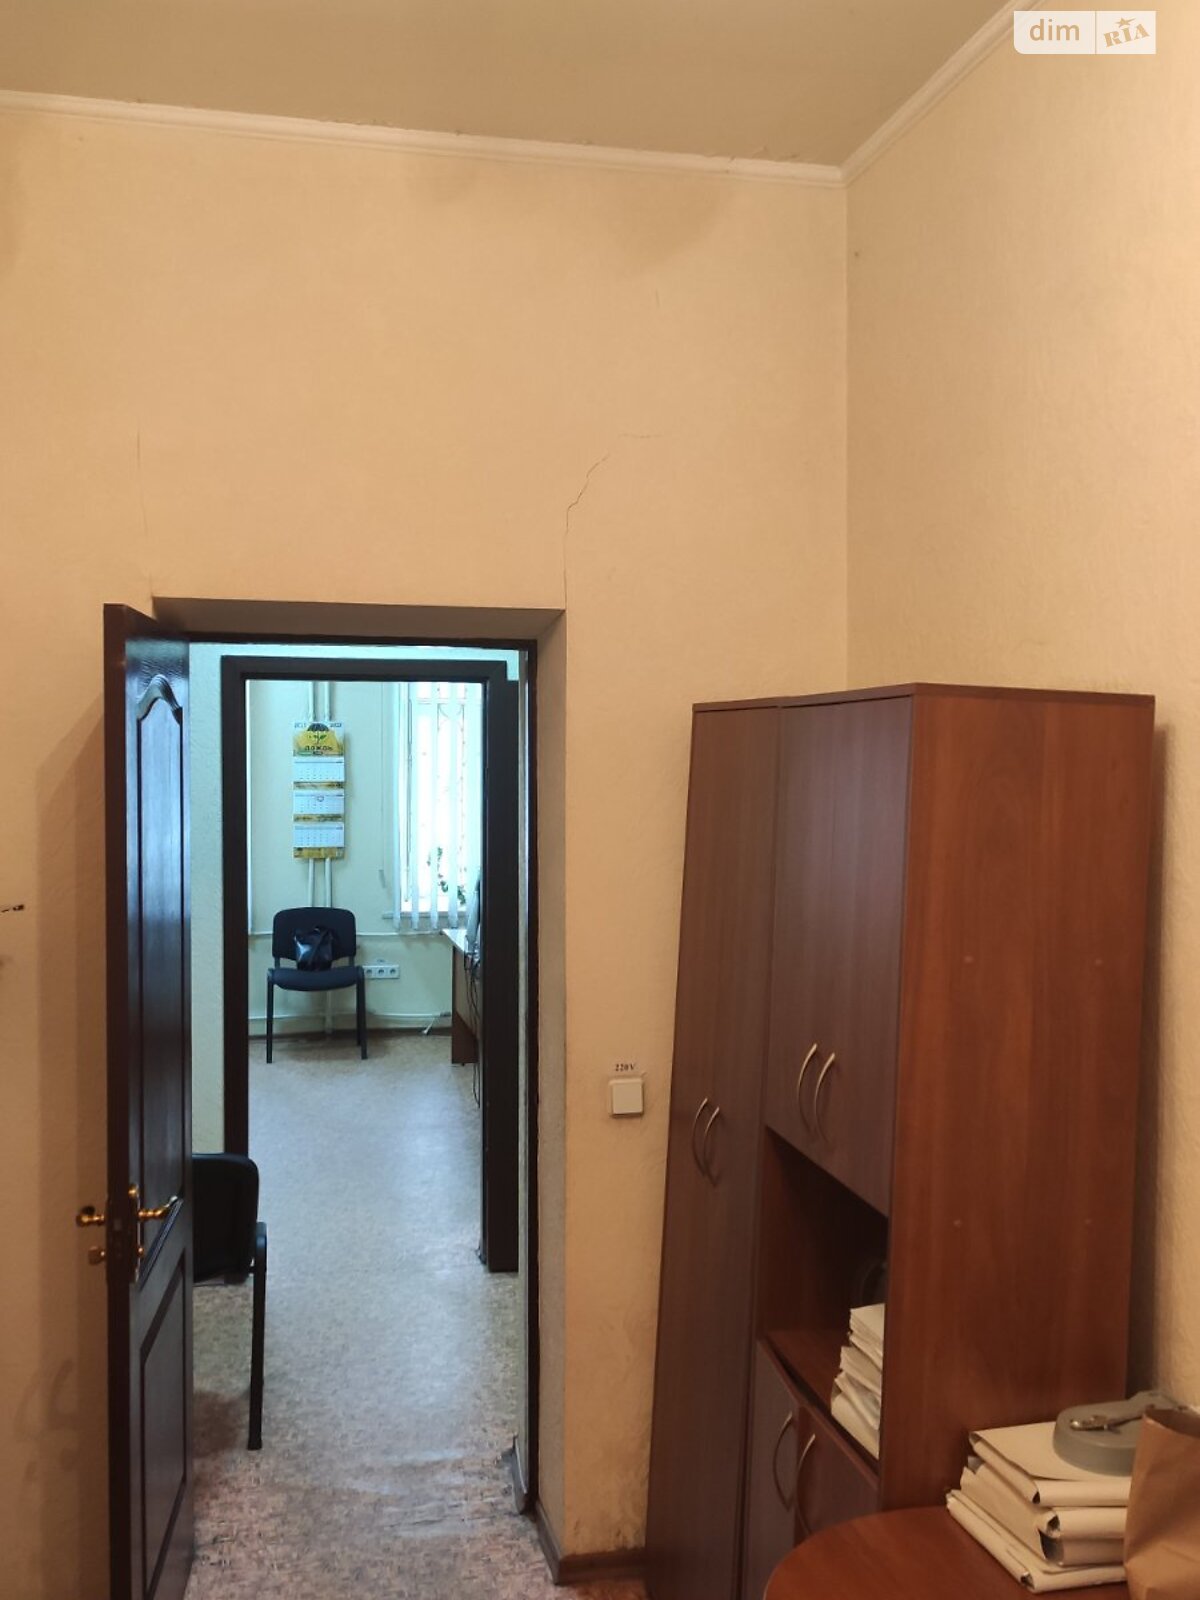 Аренда офисного помещения в Запорожье, Соборный проспект 64, помещений - 1, этаж - 1 фото 1